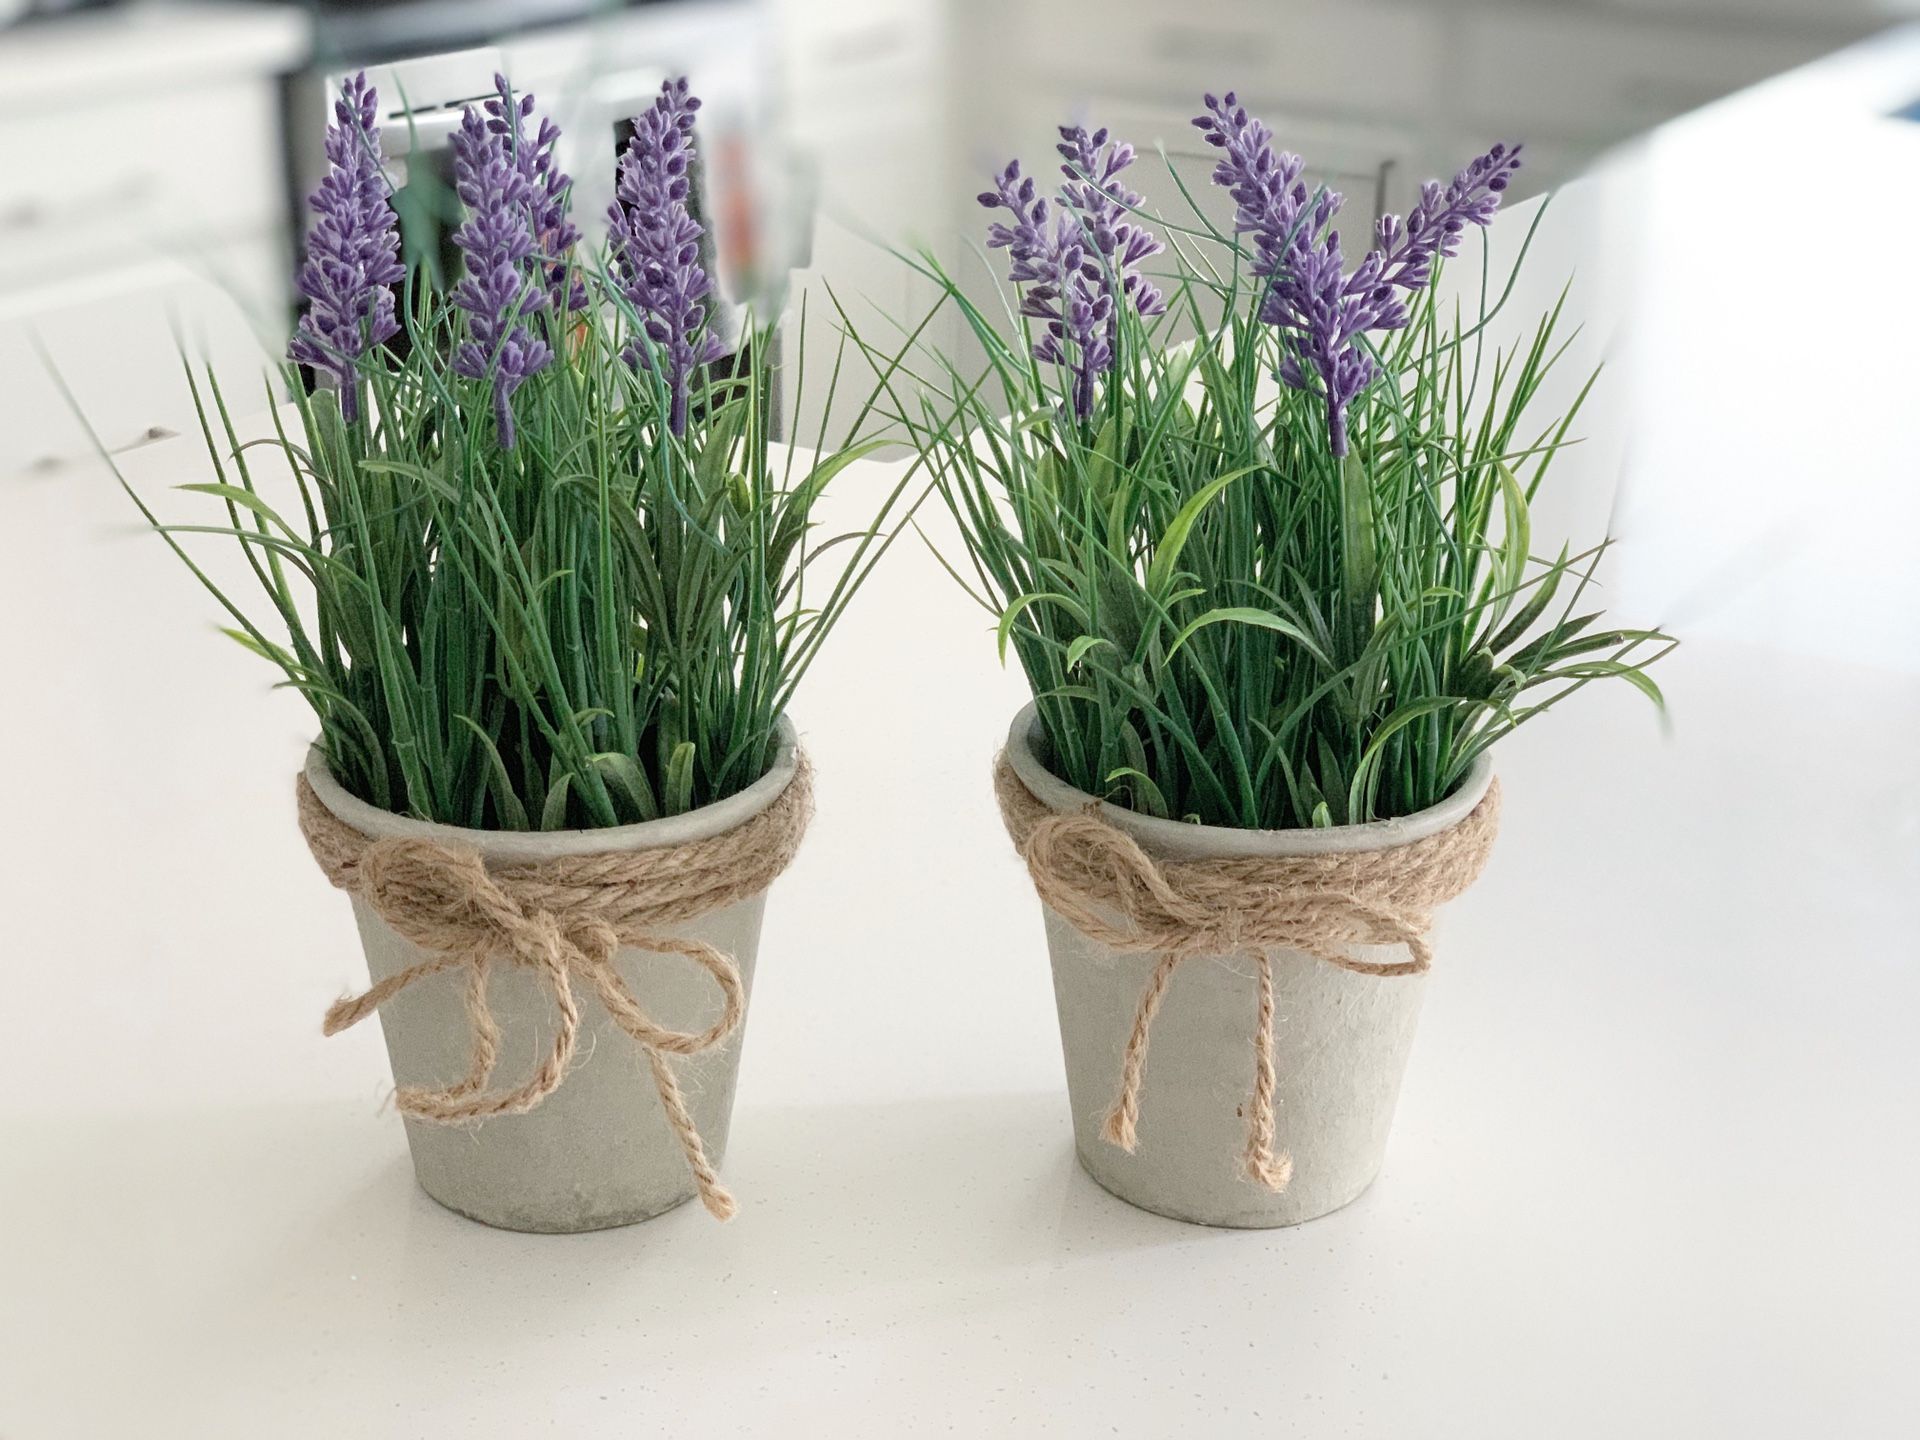 (2) Artificial lavender plants